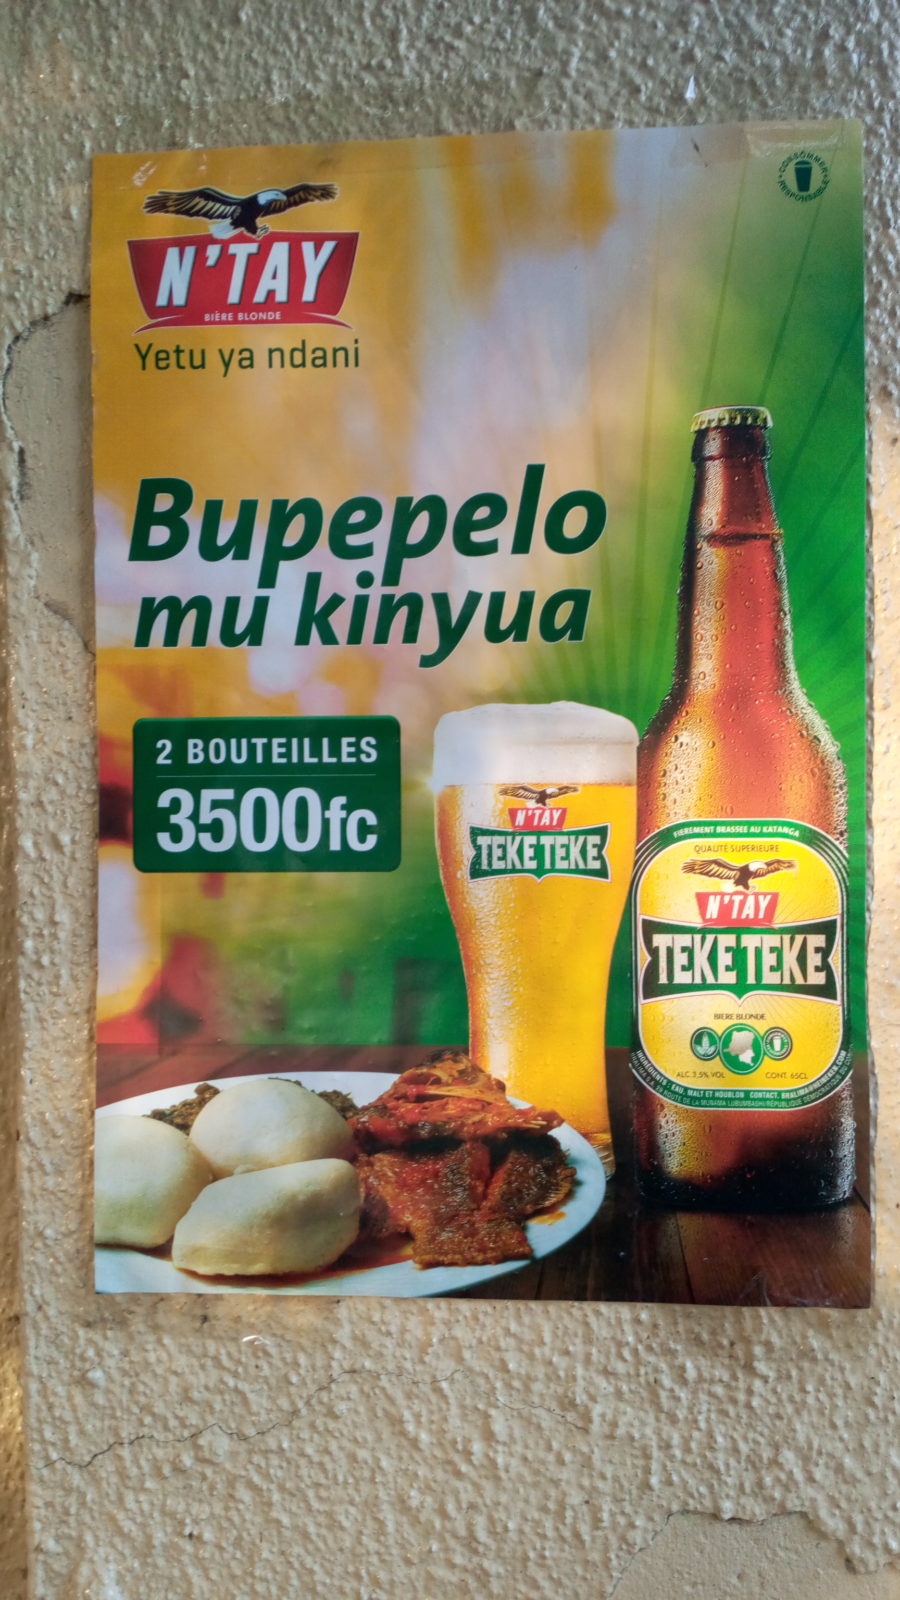 Affiche promotionnelle de la bière Teke Teke